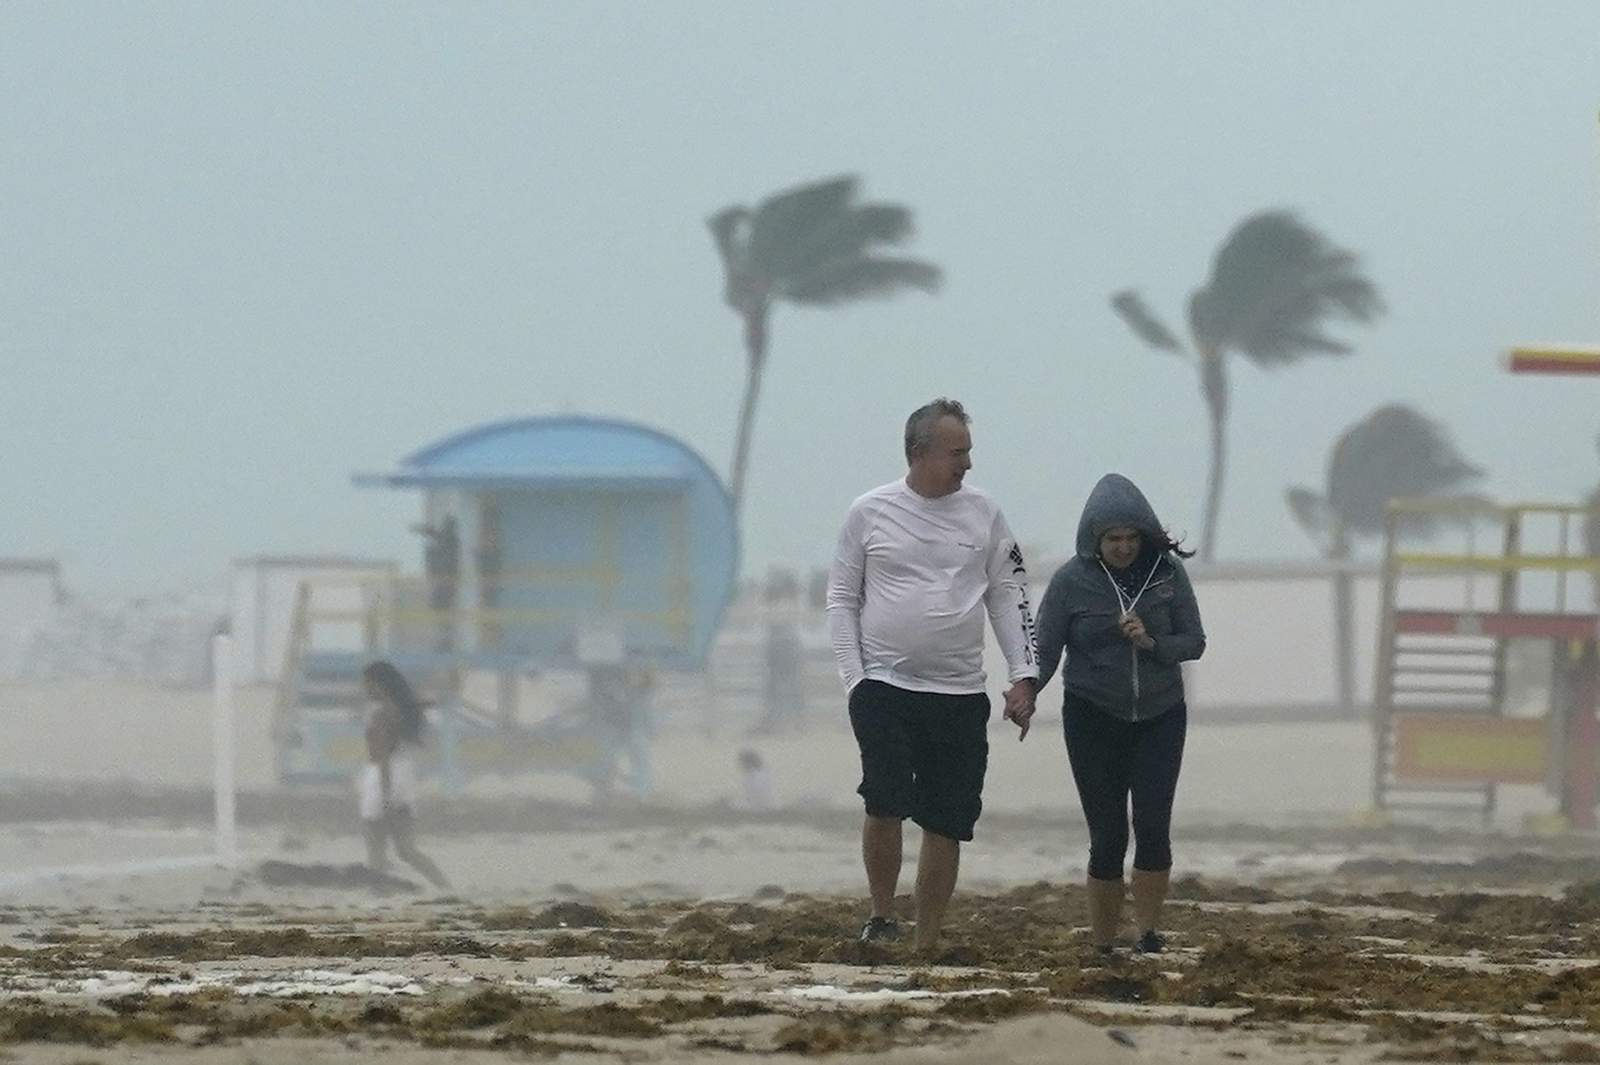 Already flooded, South Florida braces for Eta's wrath